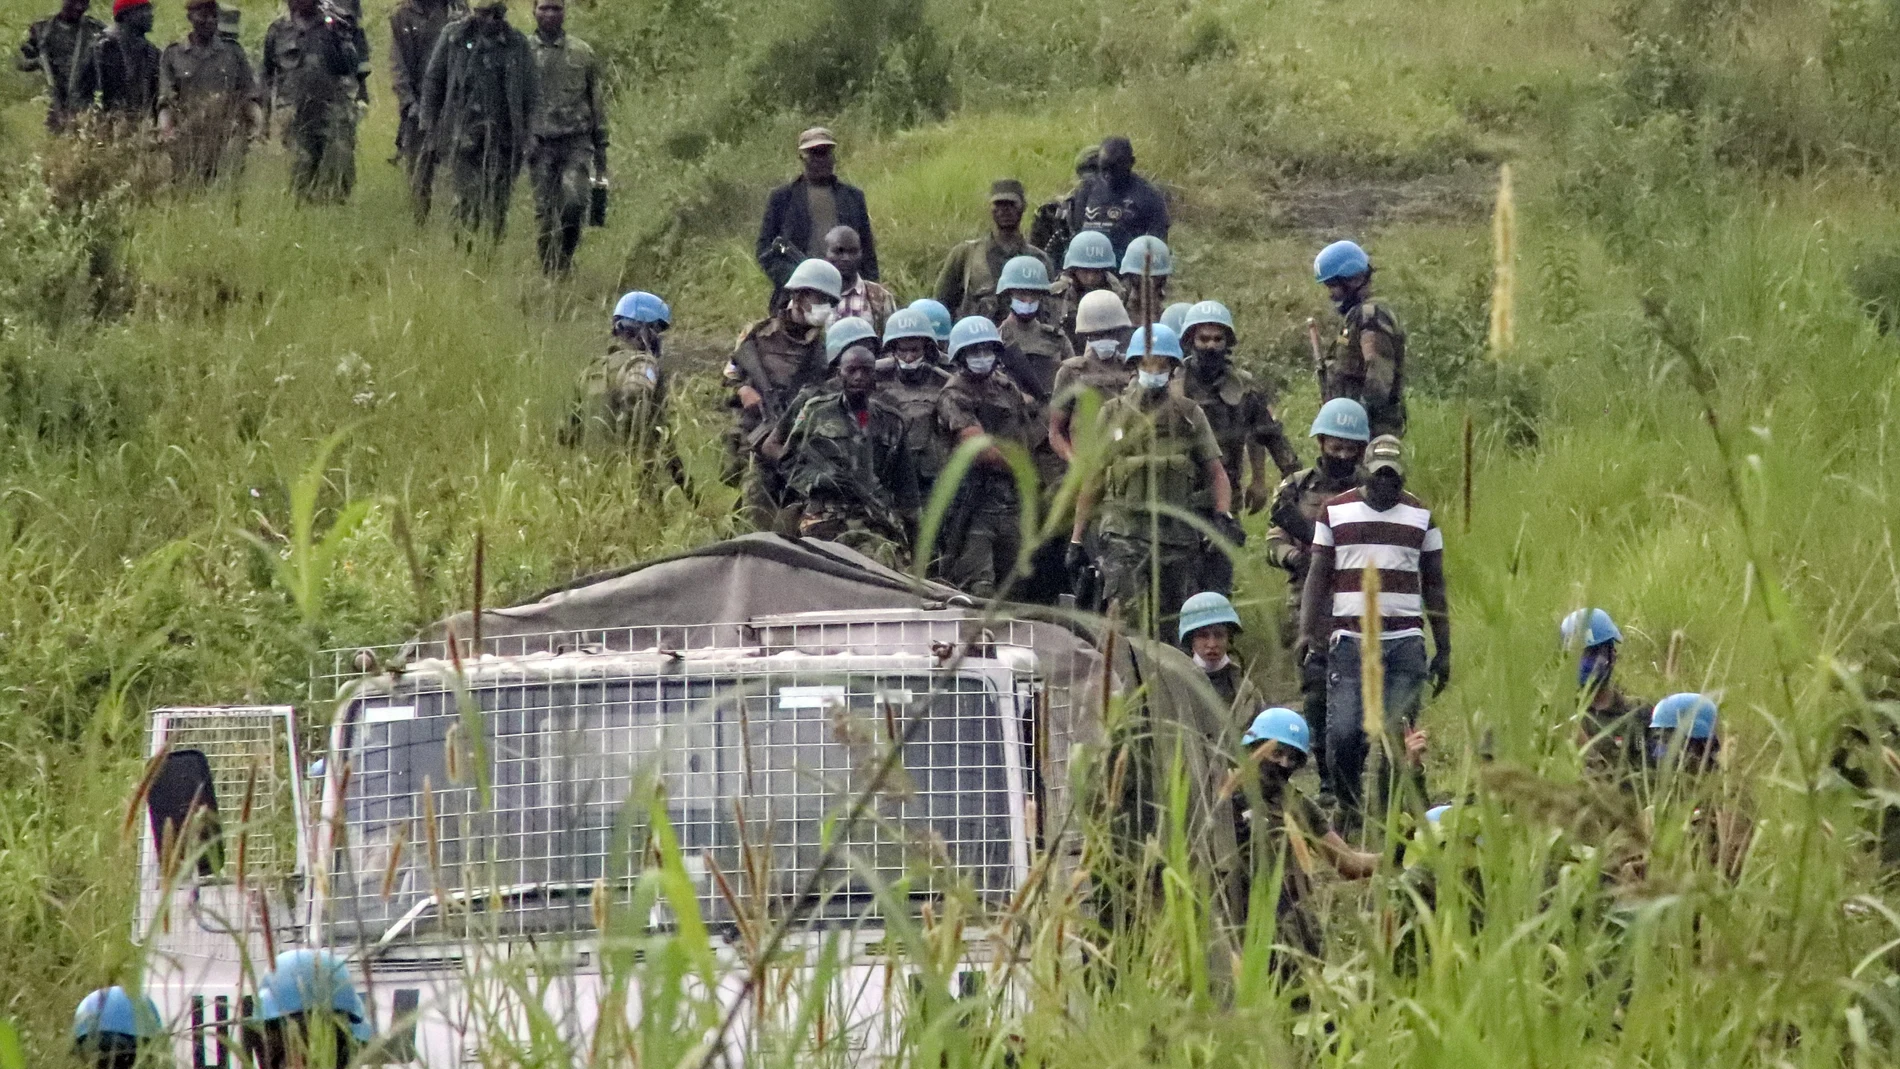 El personal de mantenimiento de la paz de las Naciones Unidas retira los cuerpos de un área cercana a donde un convoy de la ONU fue atacado y el embajador italiano en el Congo asesinado, en Nyiragongo, provincia de Kivu del Norte, Congo